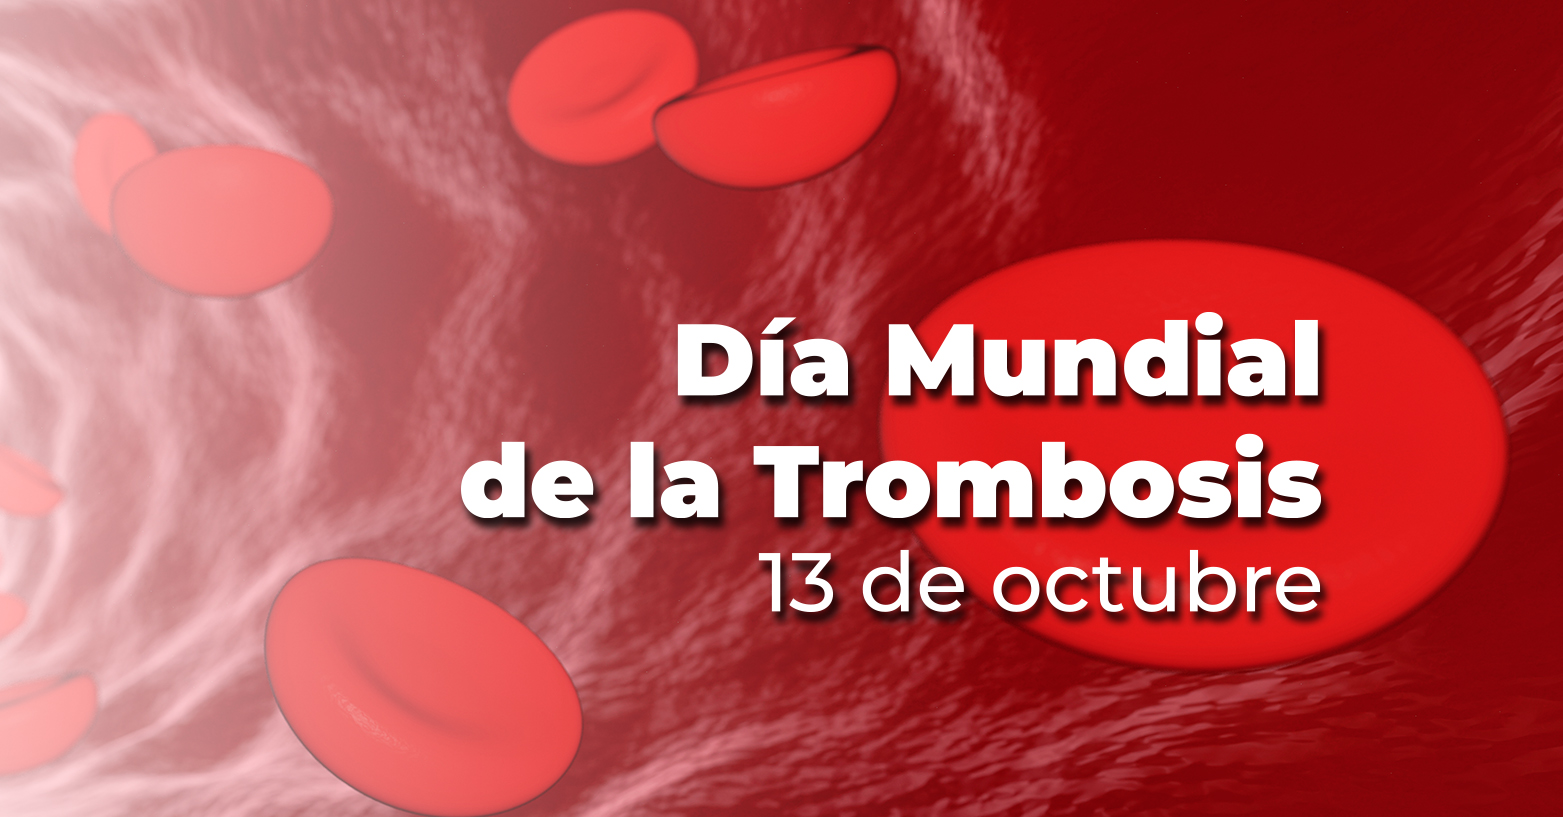 Día Mundial de la Trombosis | 13 de octubre